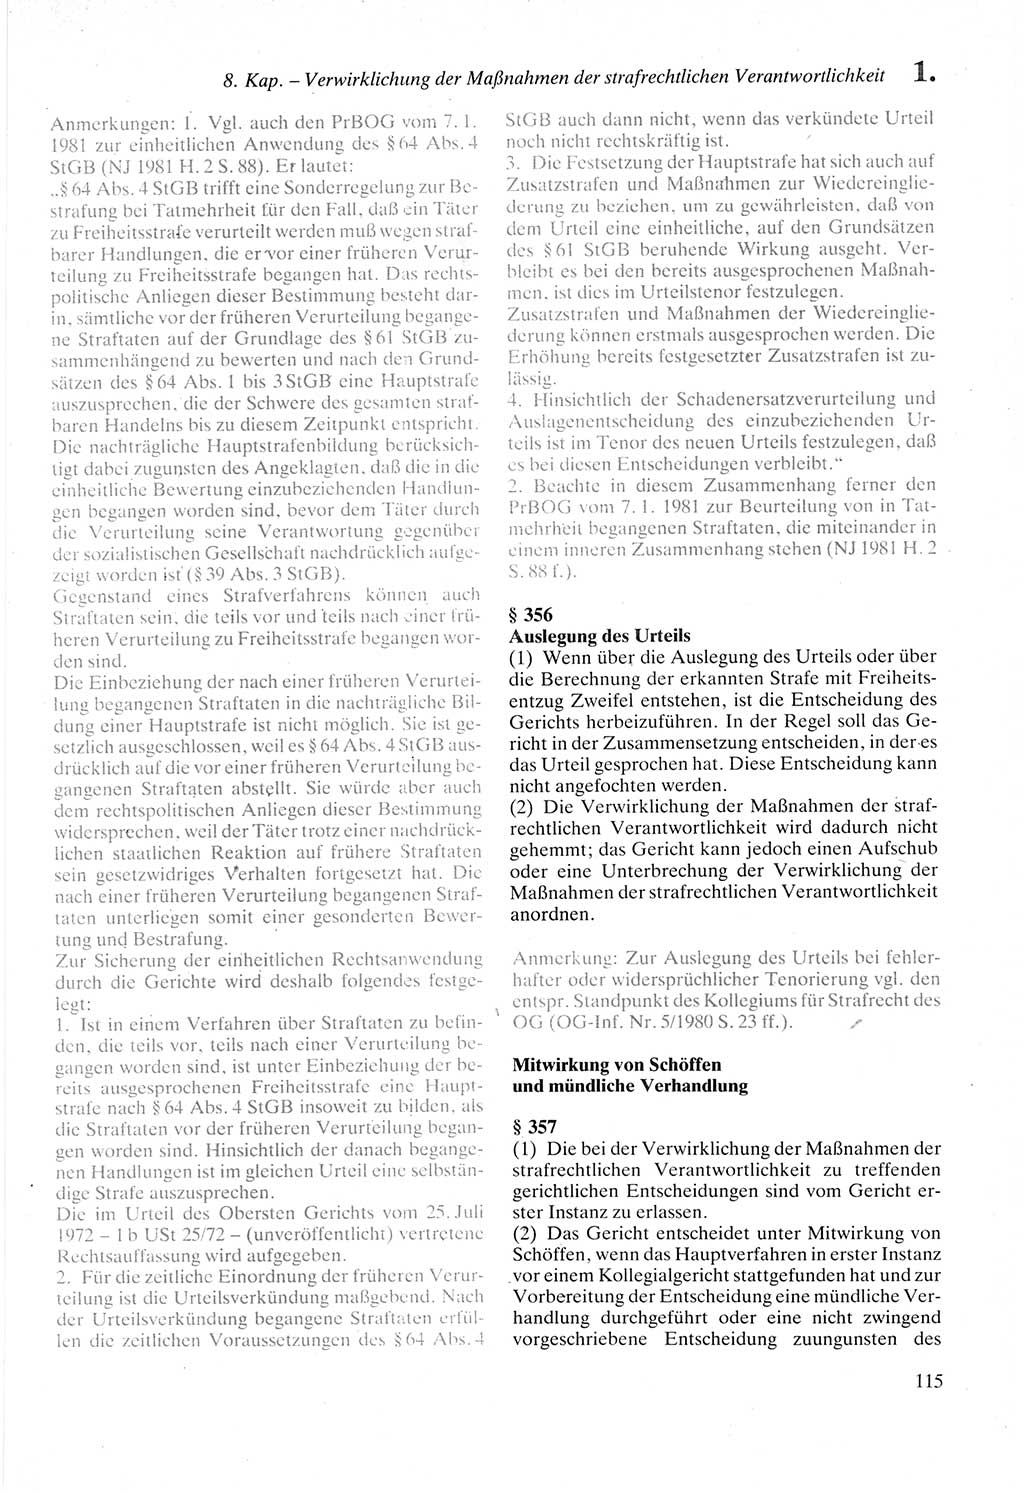 Strafprozeßordnung (StPO) der Deutschen Demokratischen Republik (DDR) sowie angrenzende Gesetze und Bestimmungen 1987, Seite 115 (StPO DDR Ges. Best. 1987, S. 115)